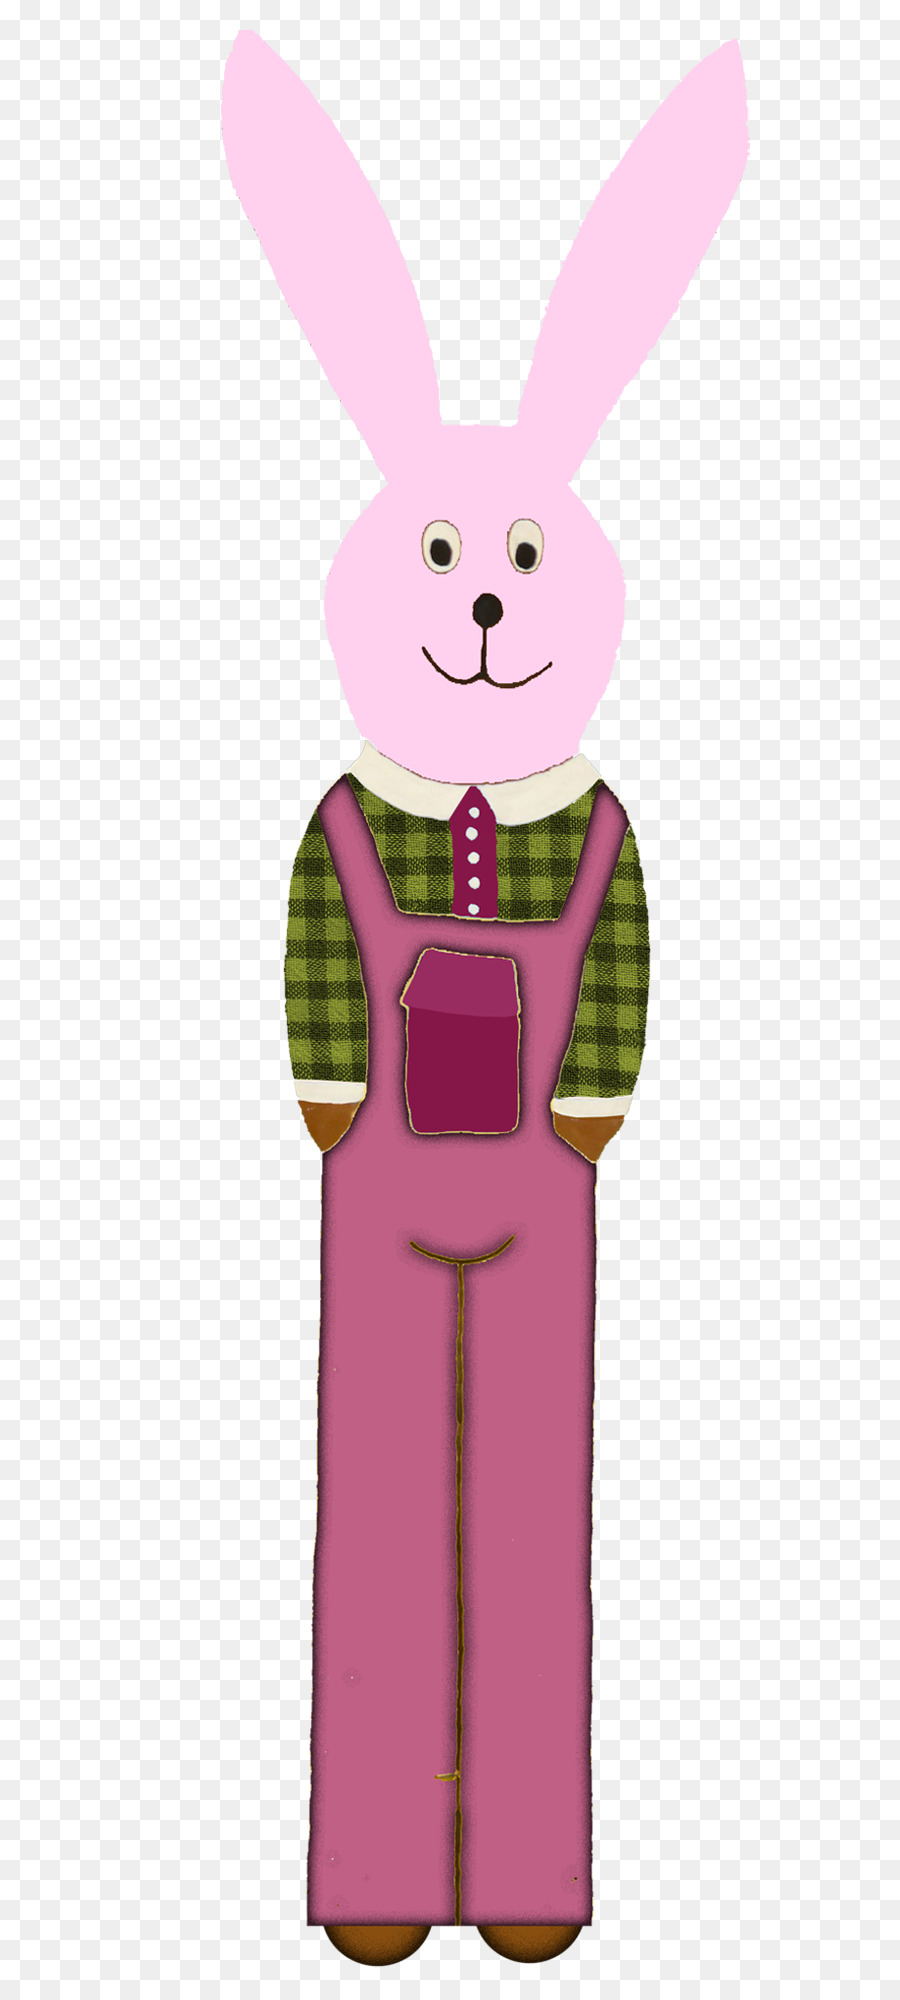 Mamma Coniglio Cartoon Rosa - Carino coniglio rosa